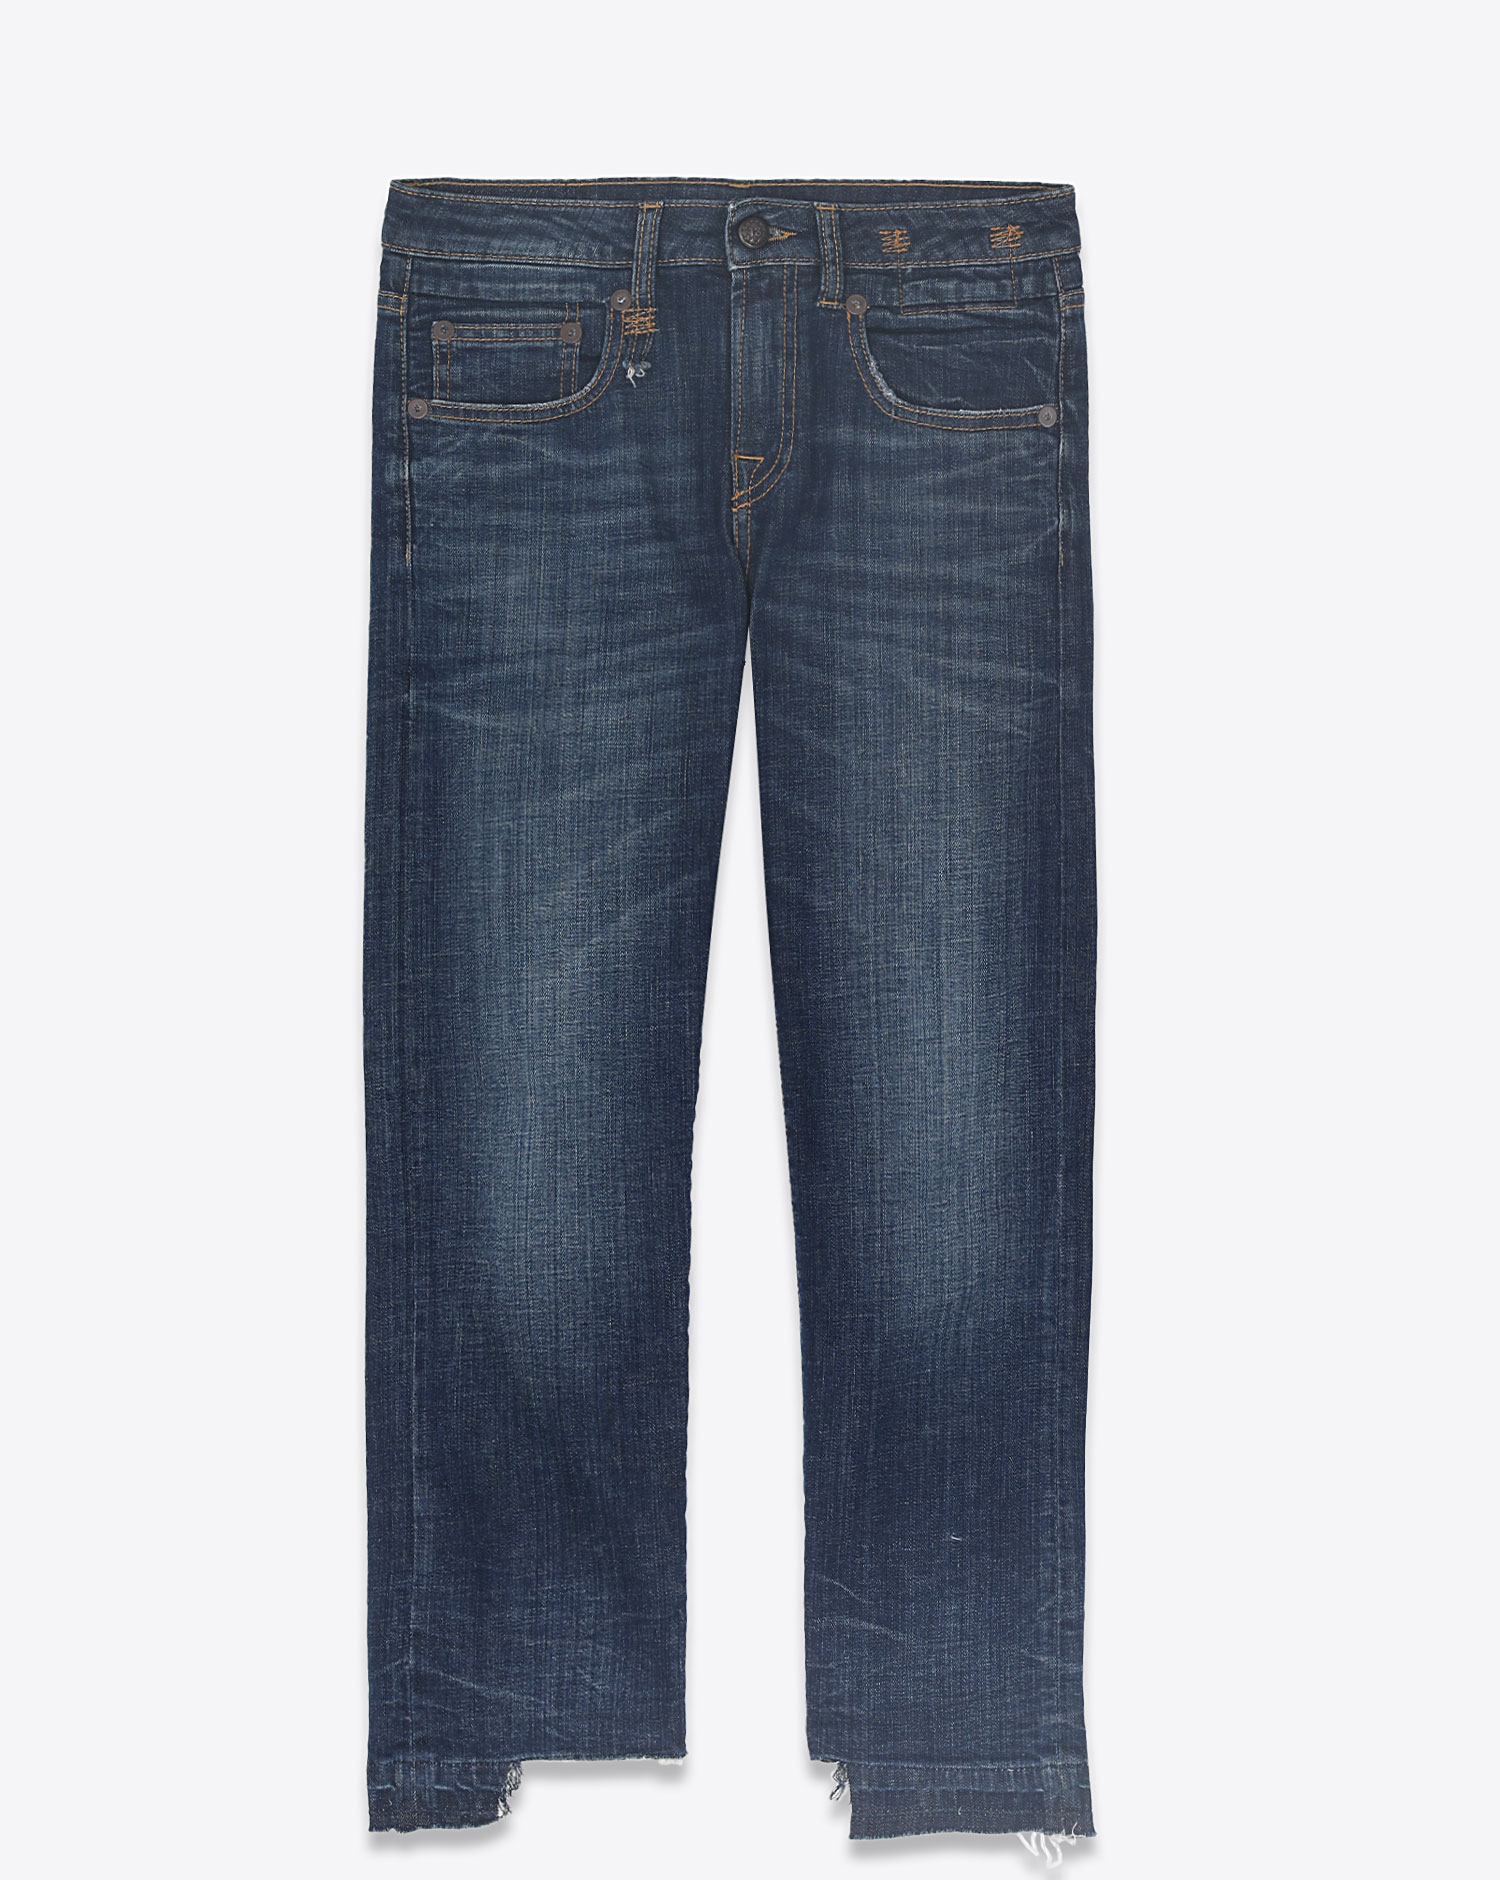 MUD PIPER JEANS 👖 | Jean pocket designs, Mens jeans pockets, Kids denim  jeans